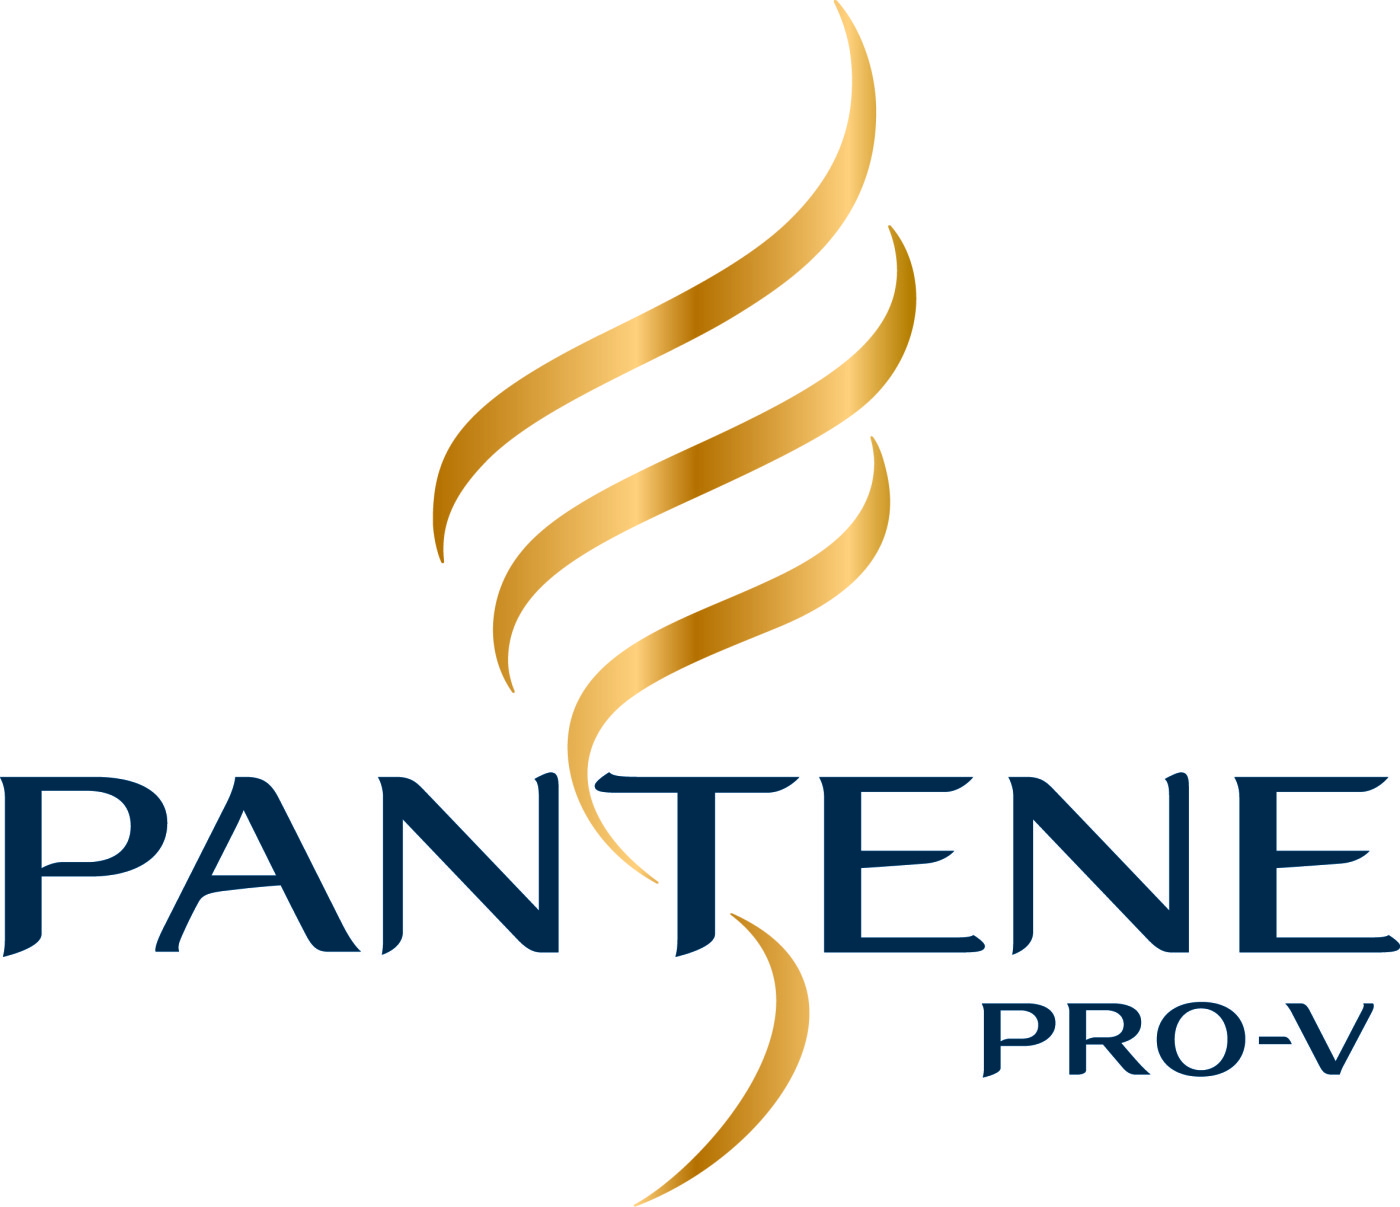 Pantene PRO-V